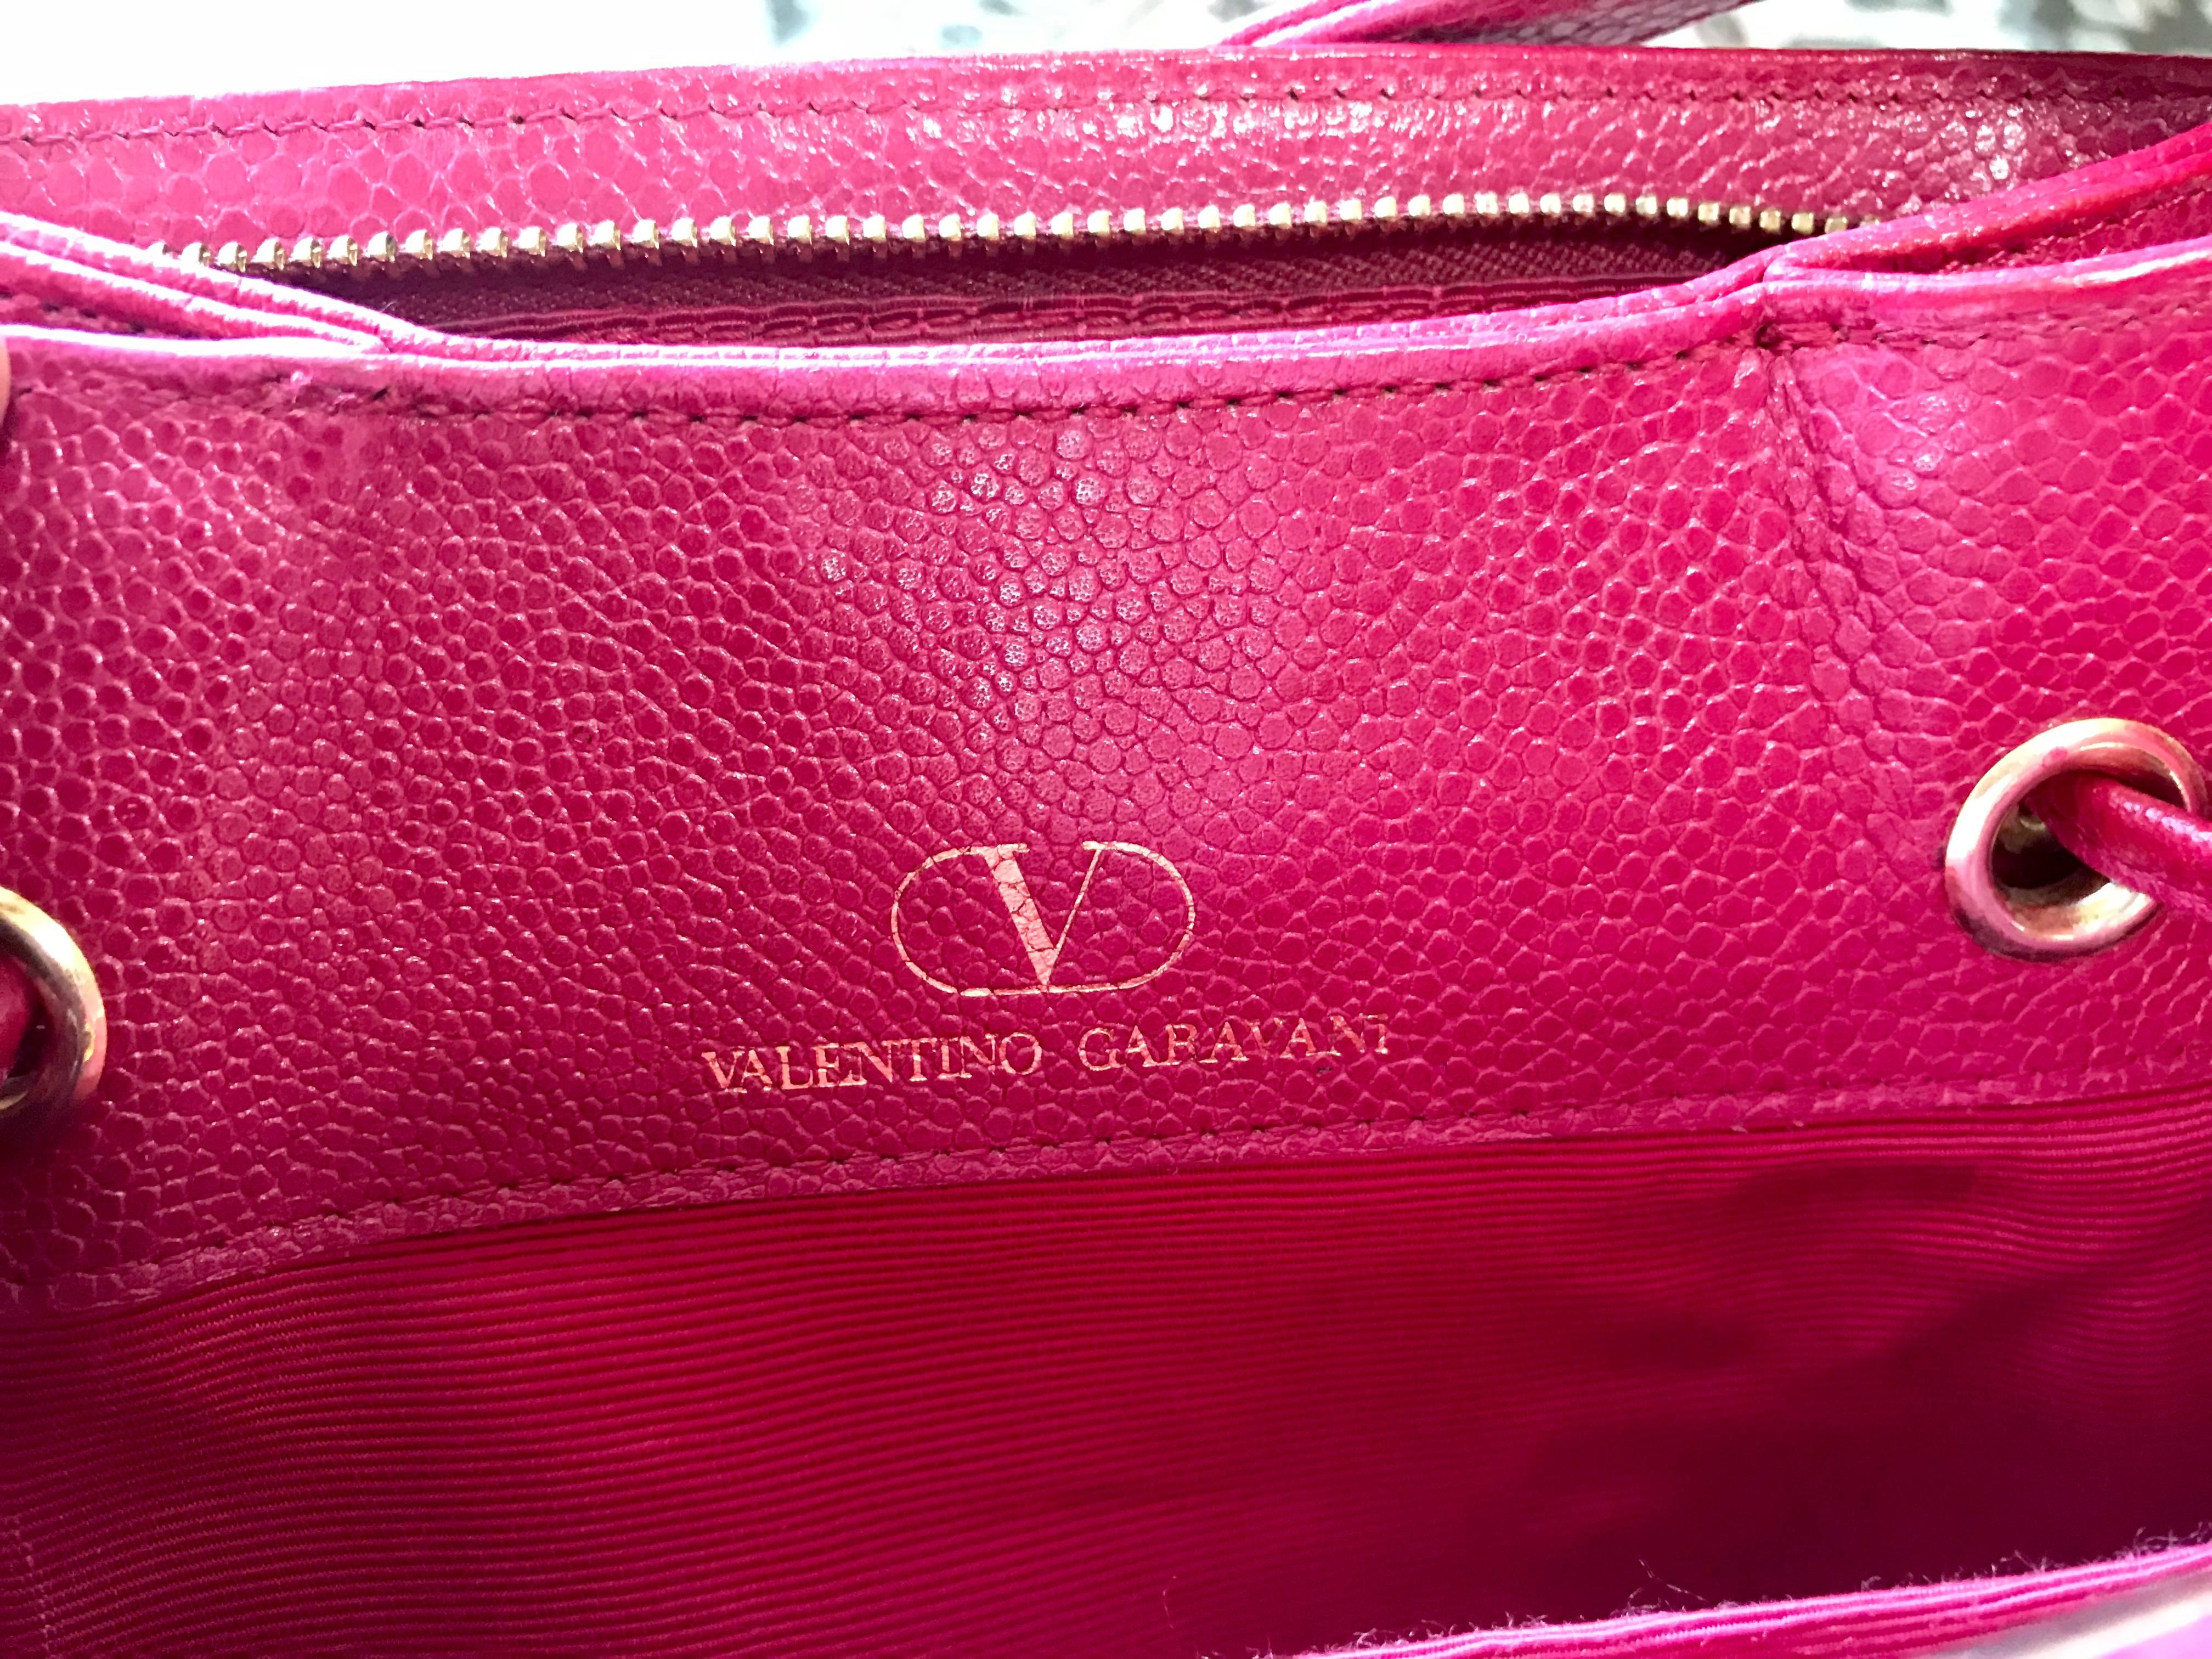 Vintage Valentino Garavani pink leather hobo bucket shoulder bag with round logo For Sale 7